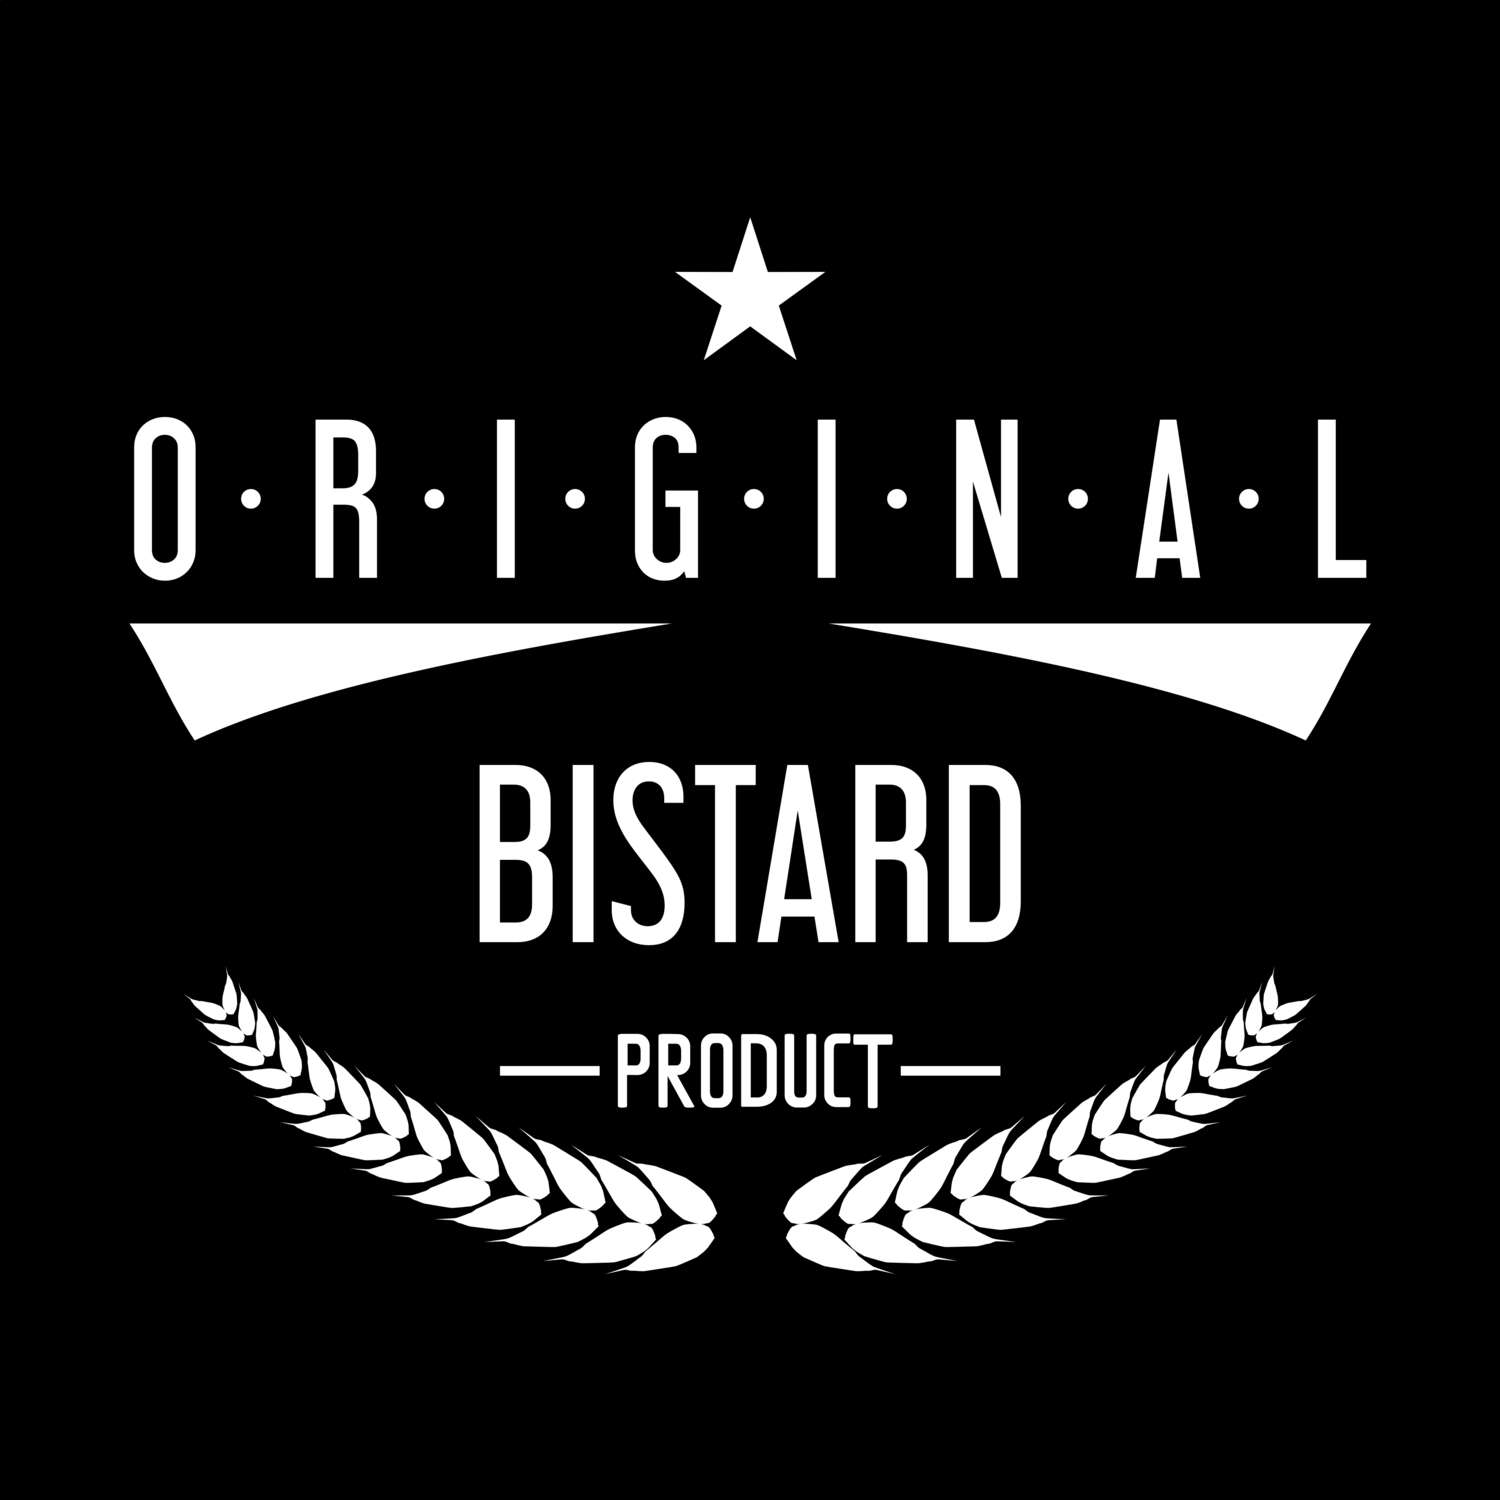 Bistard T-Shirt »Original Product«